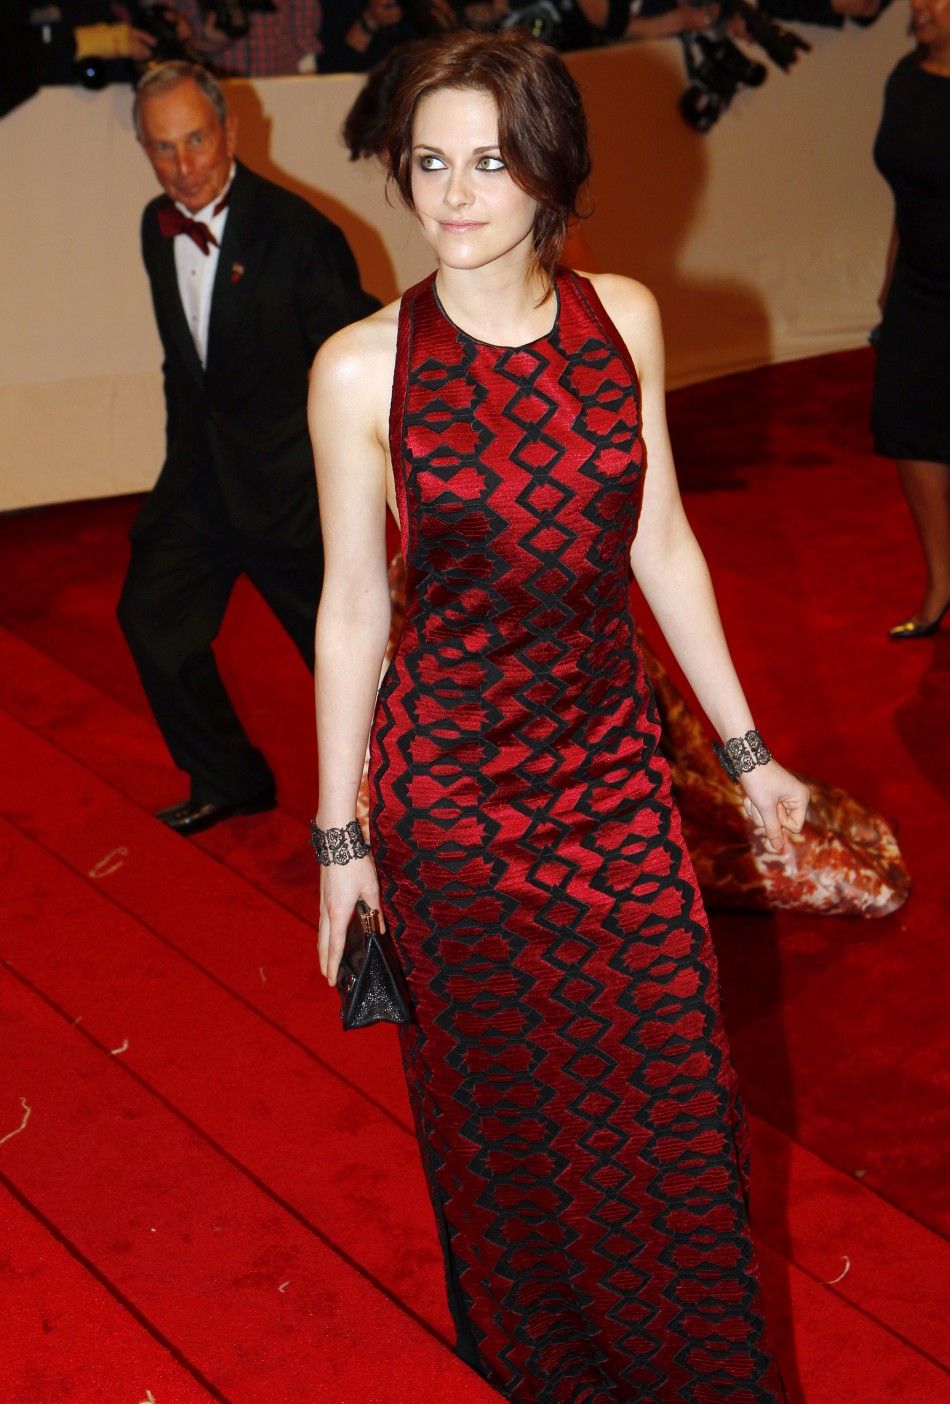 Kristen Stewart in 2011